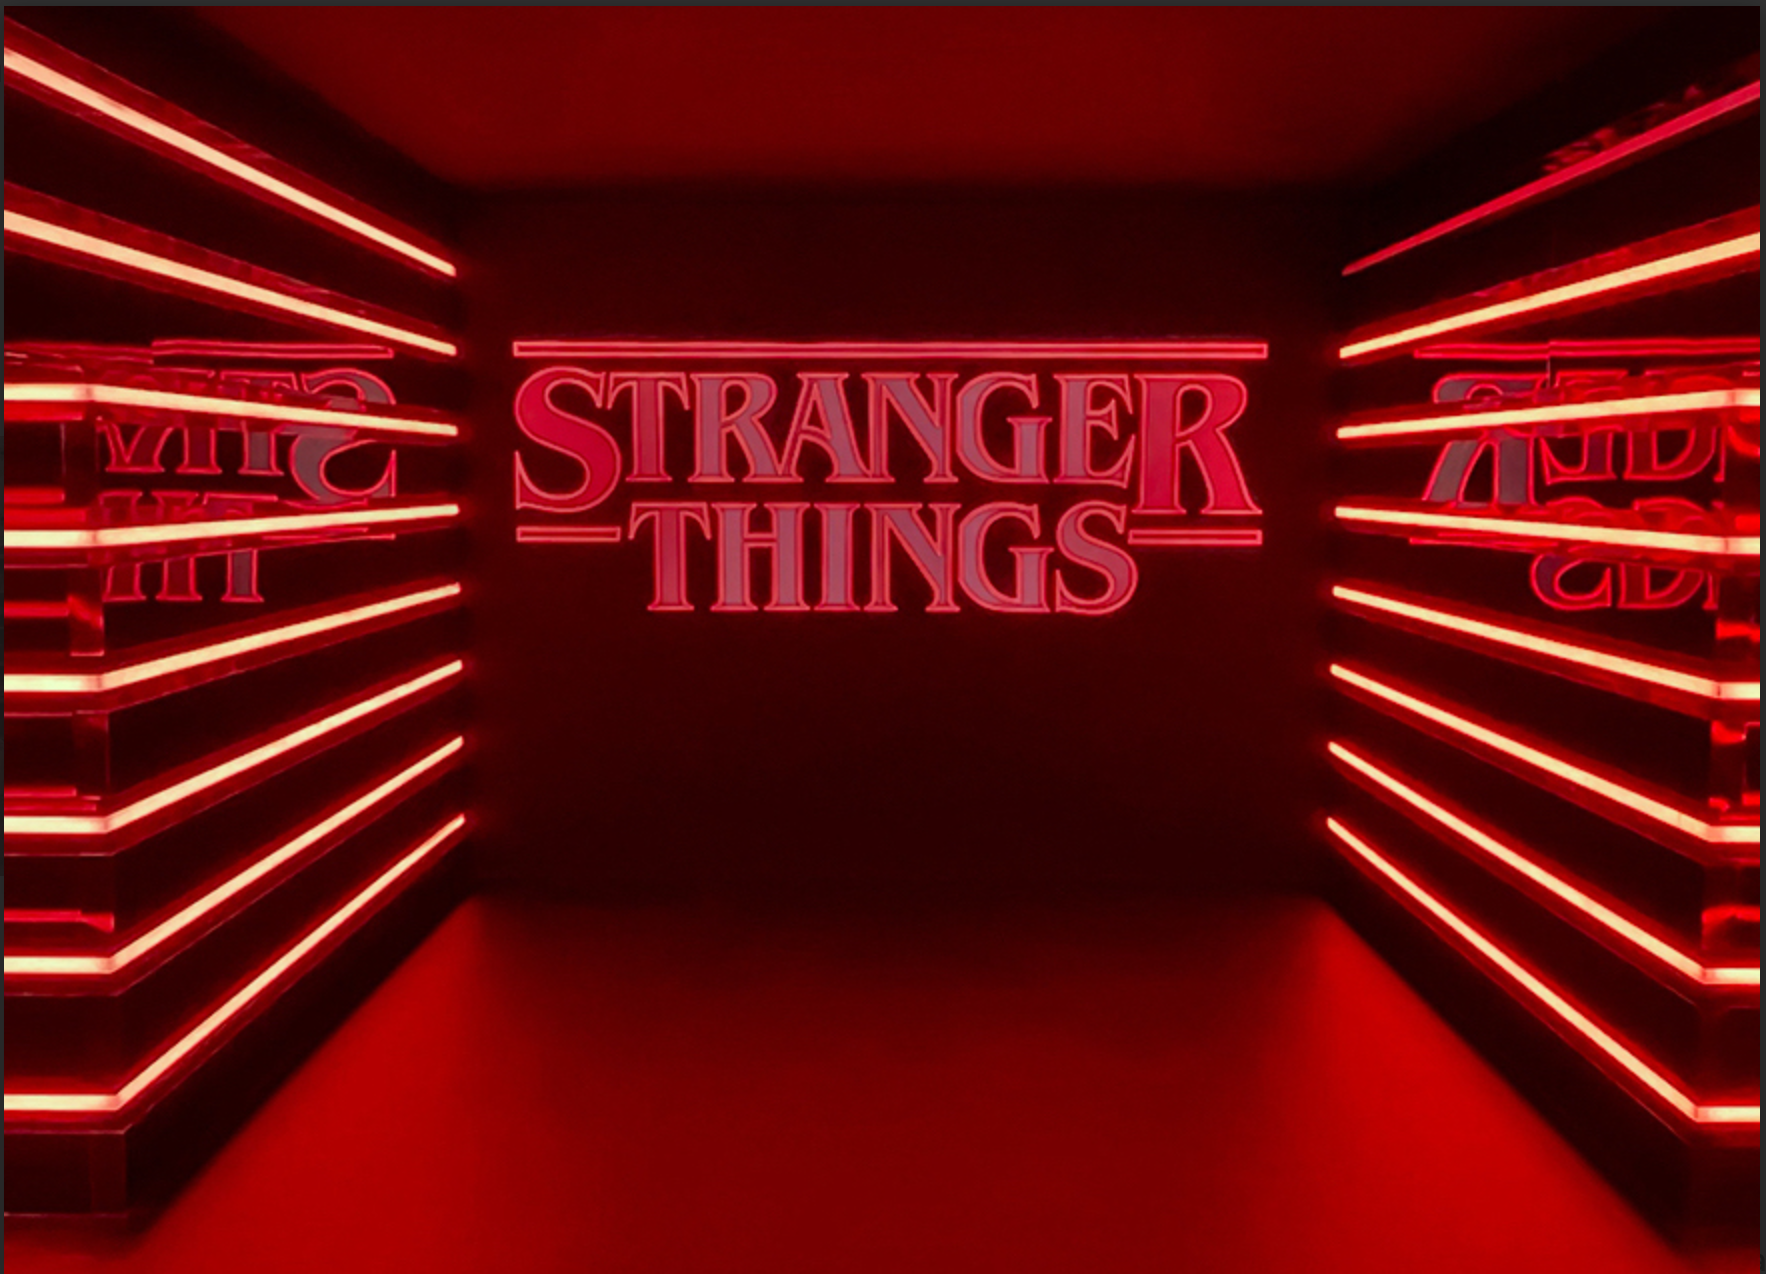 Loja oficial da série 'Stranger Things' chega pela primeira vez ao Brasil; veja detalhes